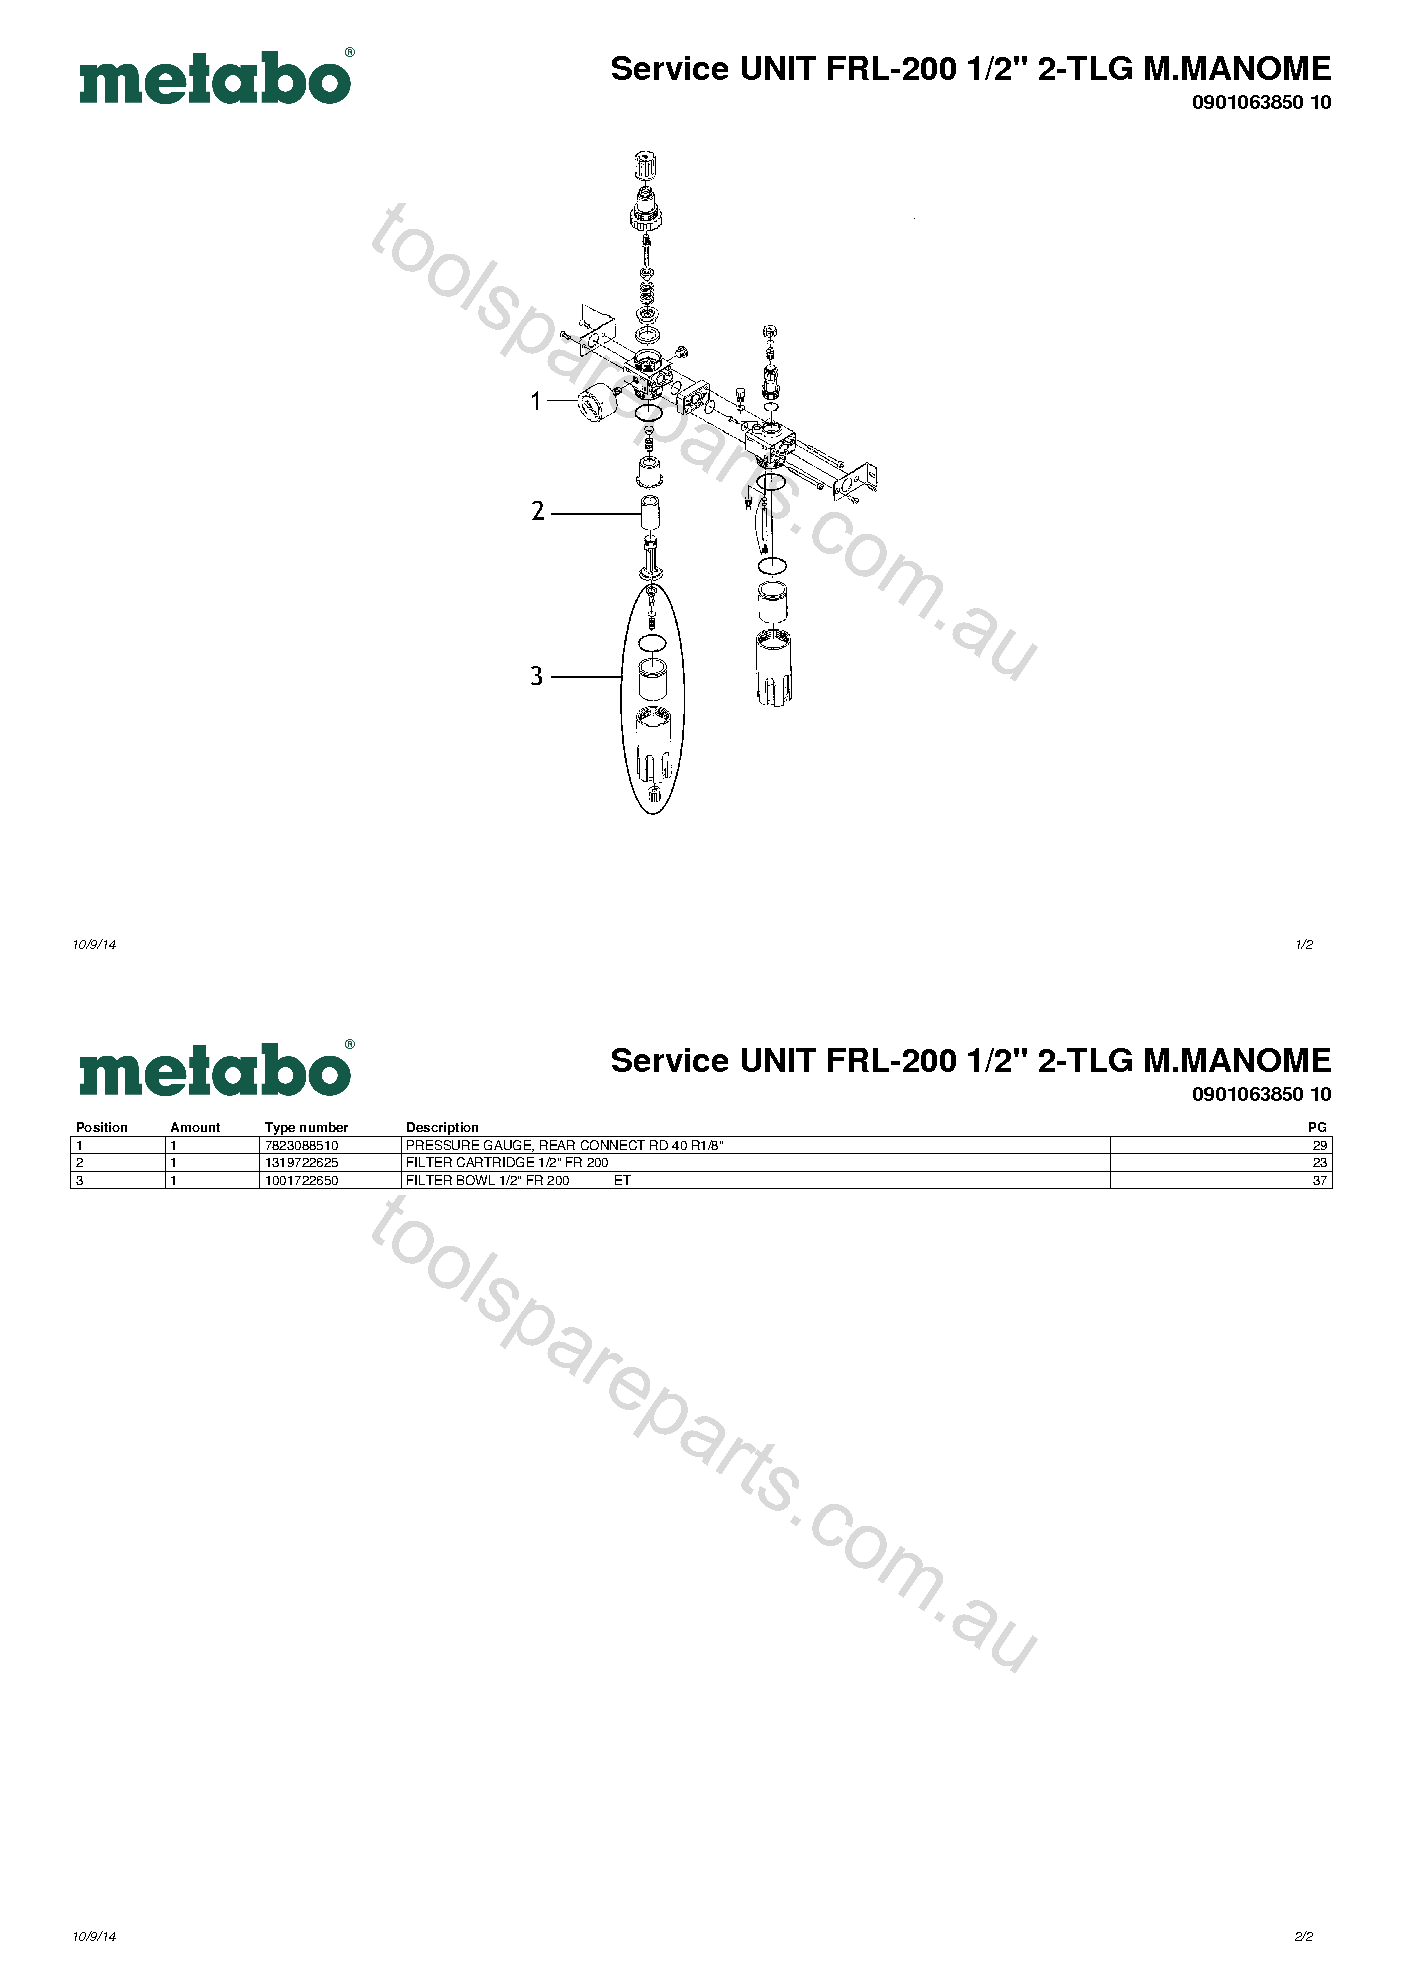 Metabo Service UNIT FRL-200 1/2